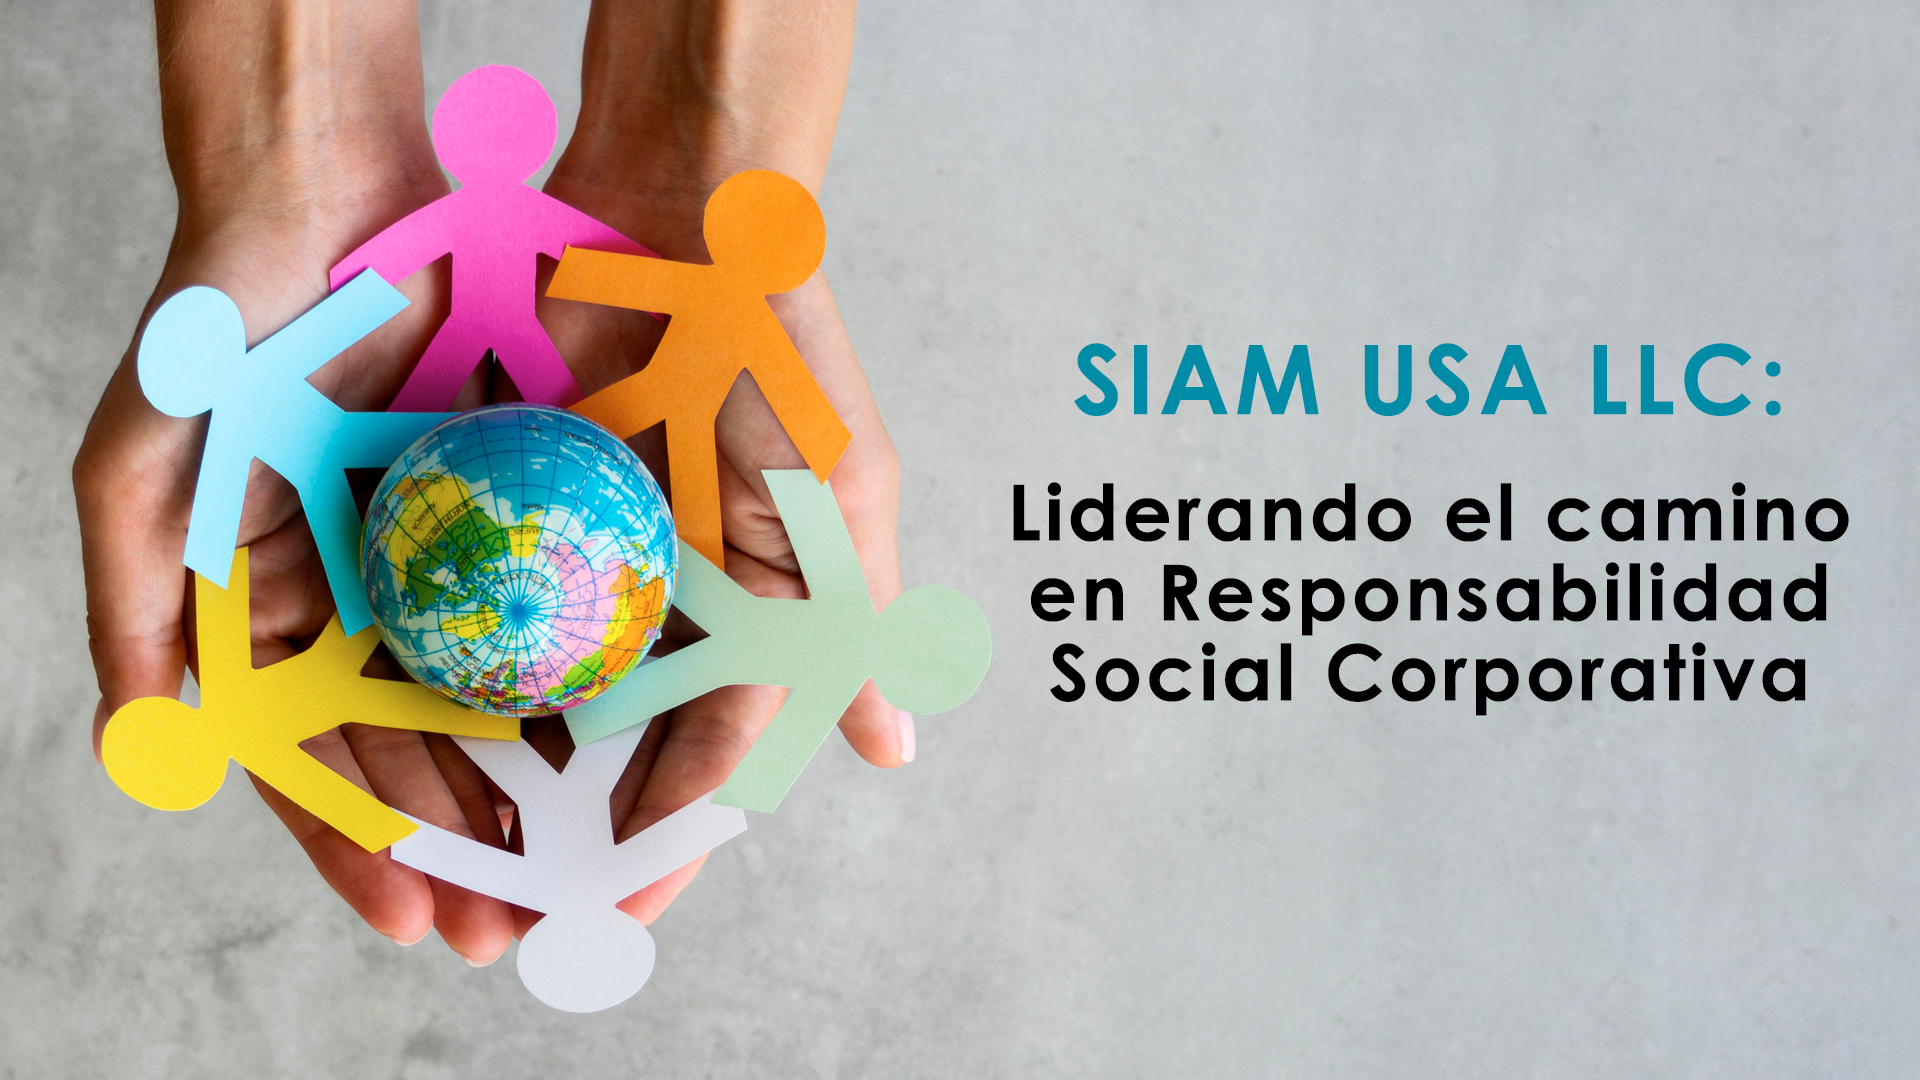 SIAM USA LLC: Liderando el camino en Responsabilidad Social Corporativa